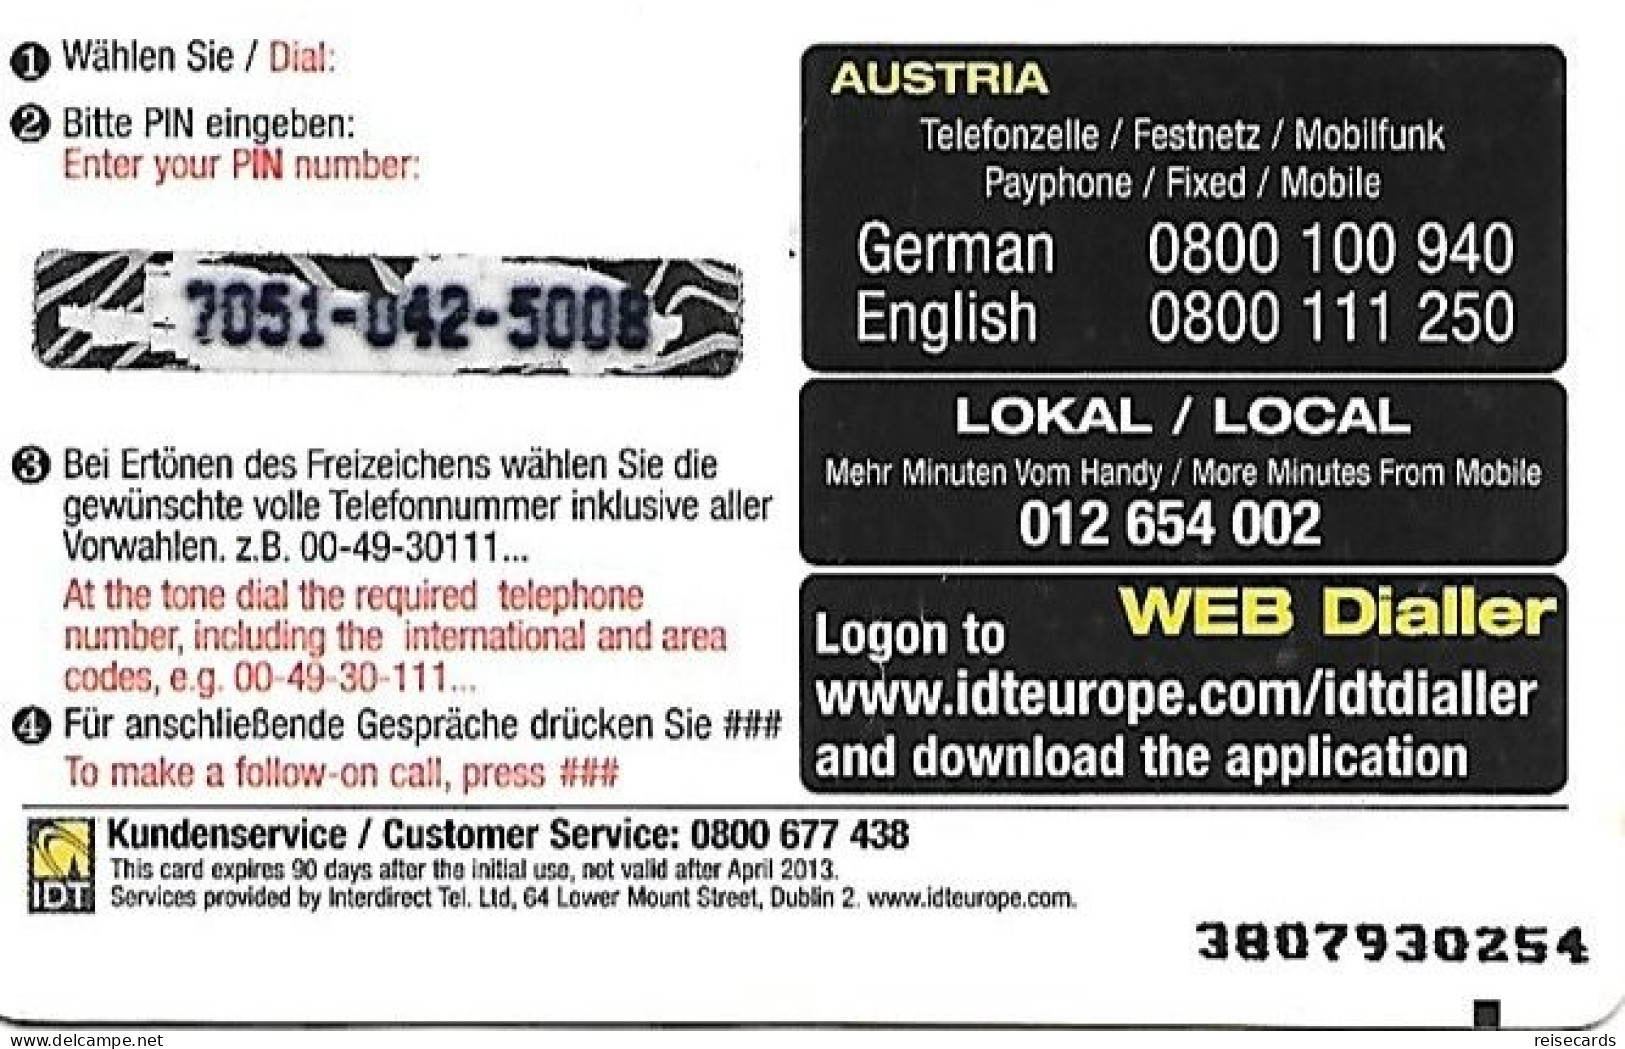 Austria: Prepaid IDT - Top Card 04.13 (SN Thick) - Austria